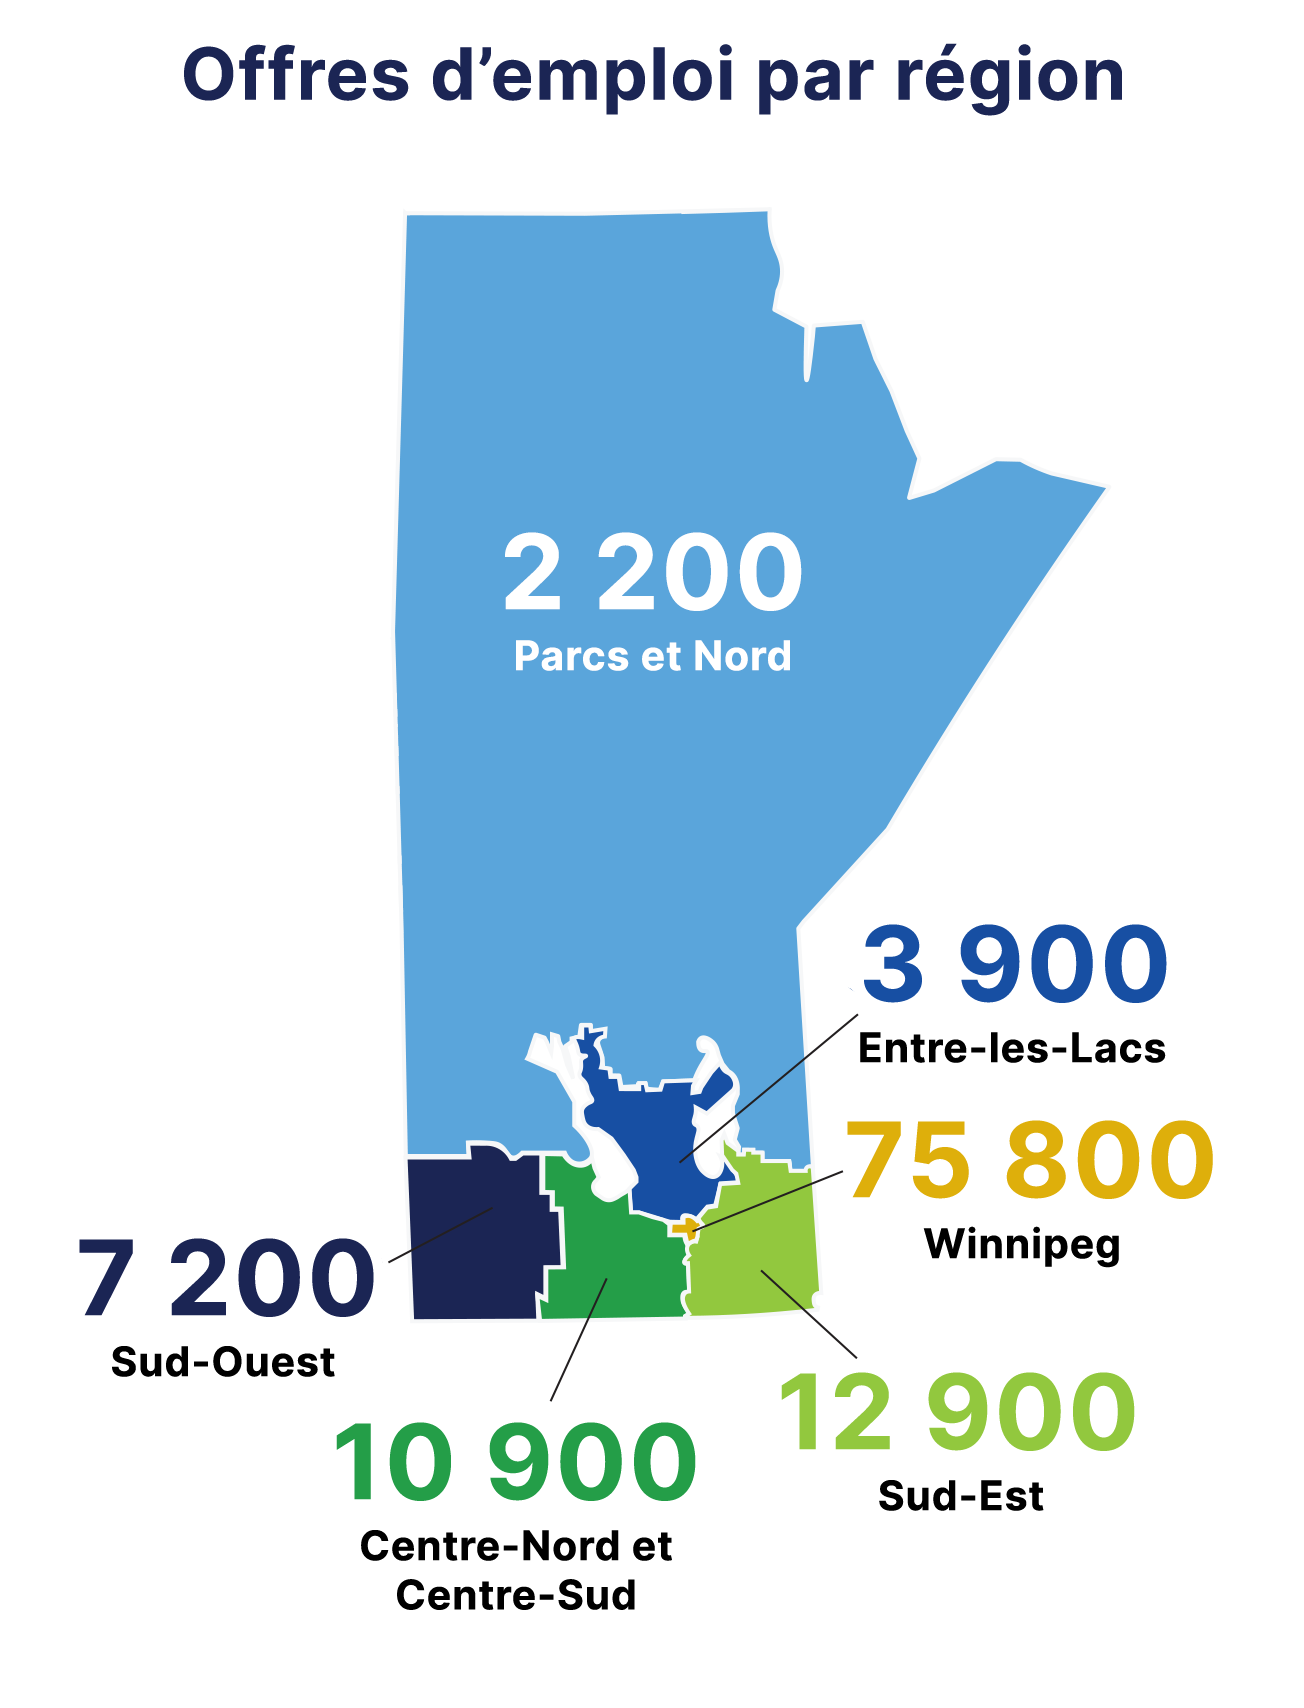 Offres demploi par rgion : 2 200  Parcs et Nord; 3 900  Entre-les-Lacs; 7 200  Sud-Ouest; 75 800  Winnipeg; 10 900  Centre-Nord et Centre-Sud; 12 900  Sud-Est